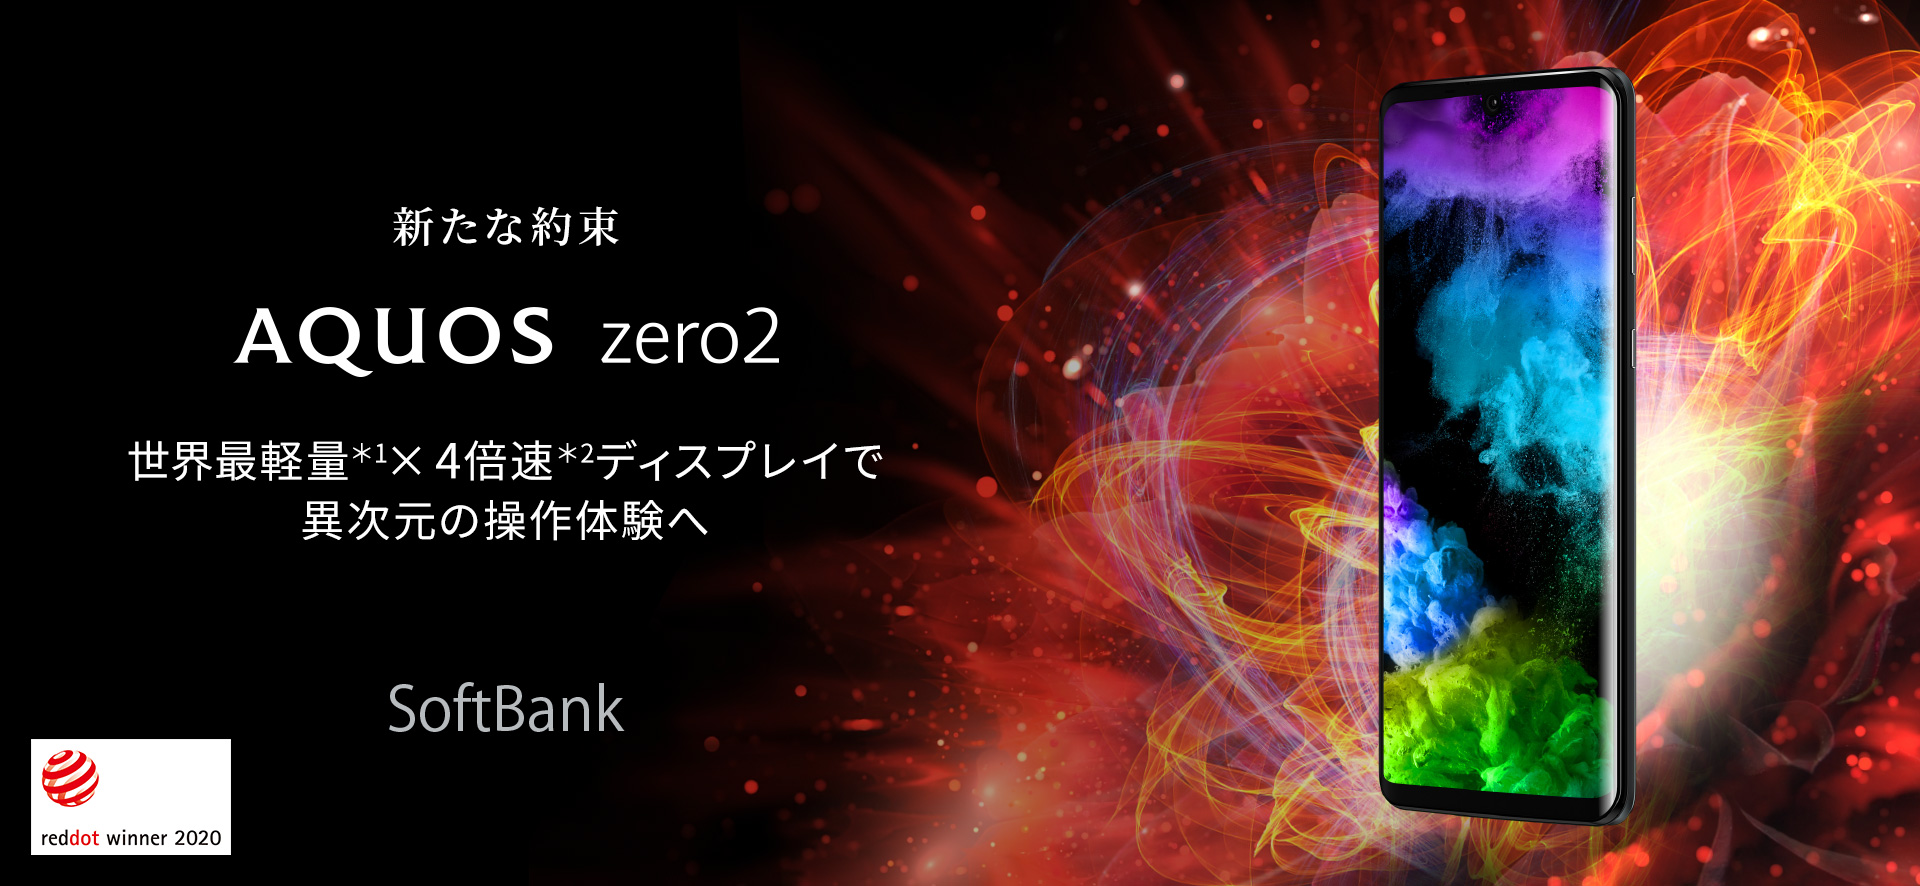 スマートフォン/携帯電話 スマートフォン本体 AQUOS zero2 アストロブラック 256 GB Softbank スマートフォン本体 